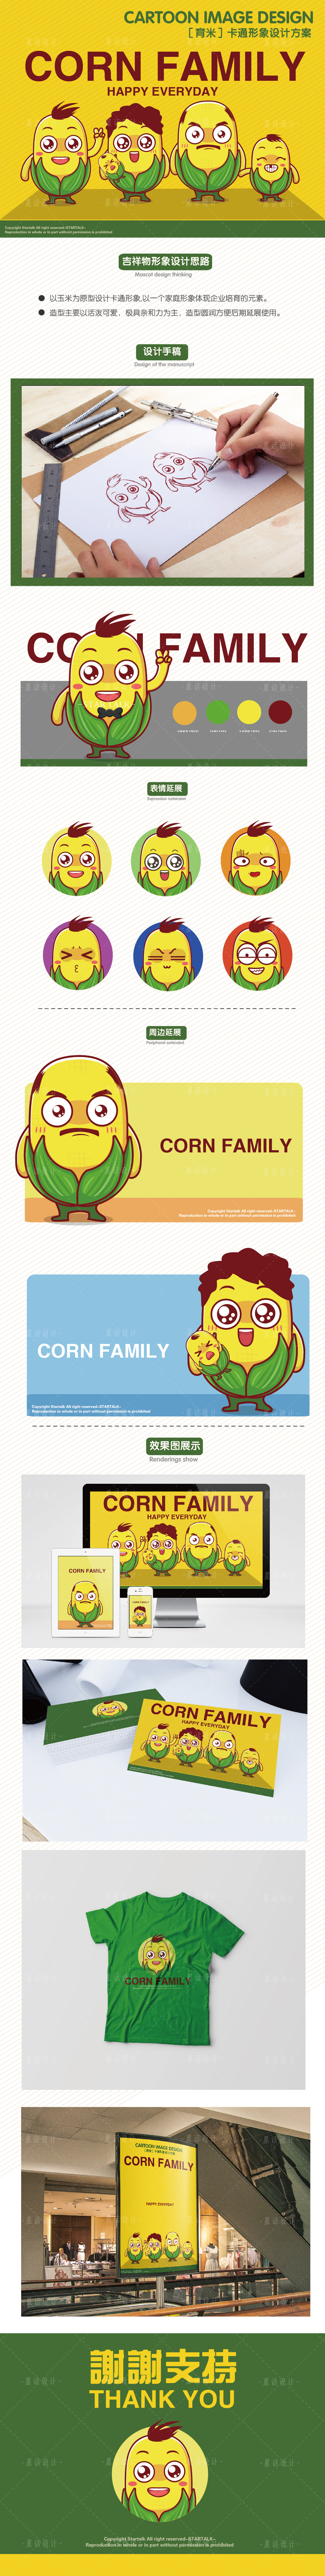 【玉米家族】卡通形象设计 [1P]图0